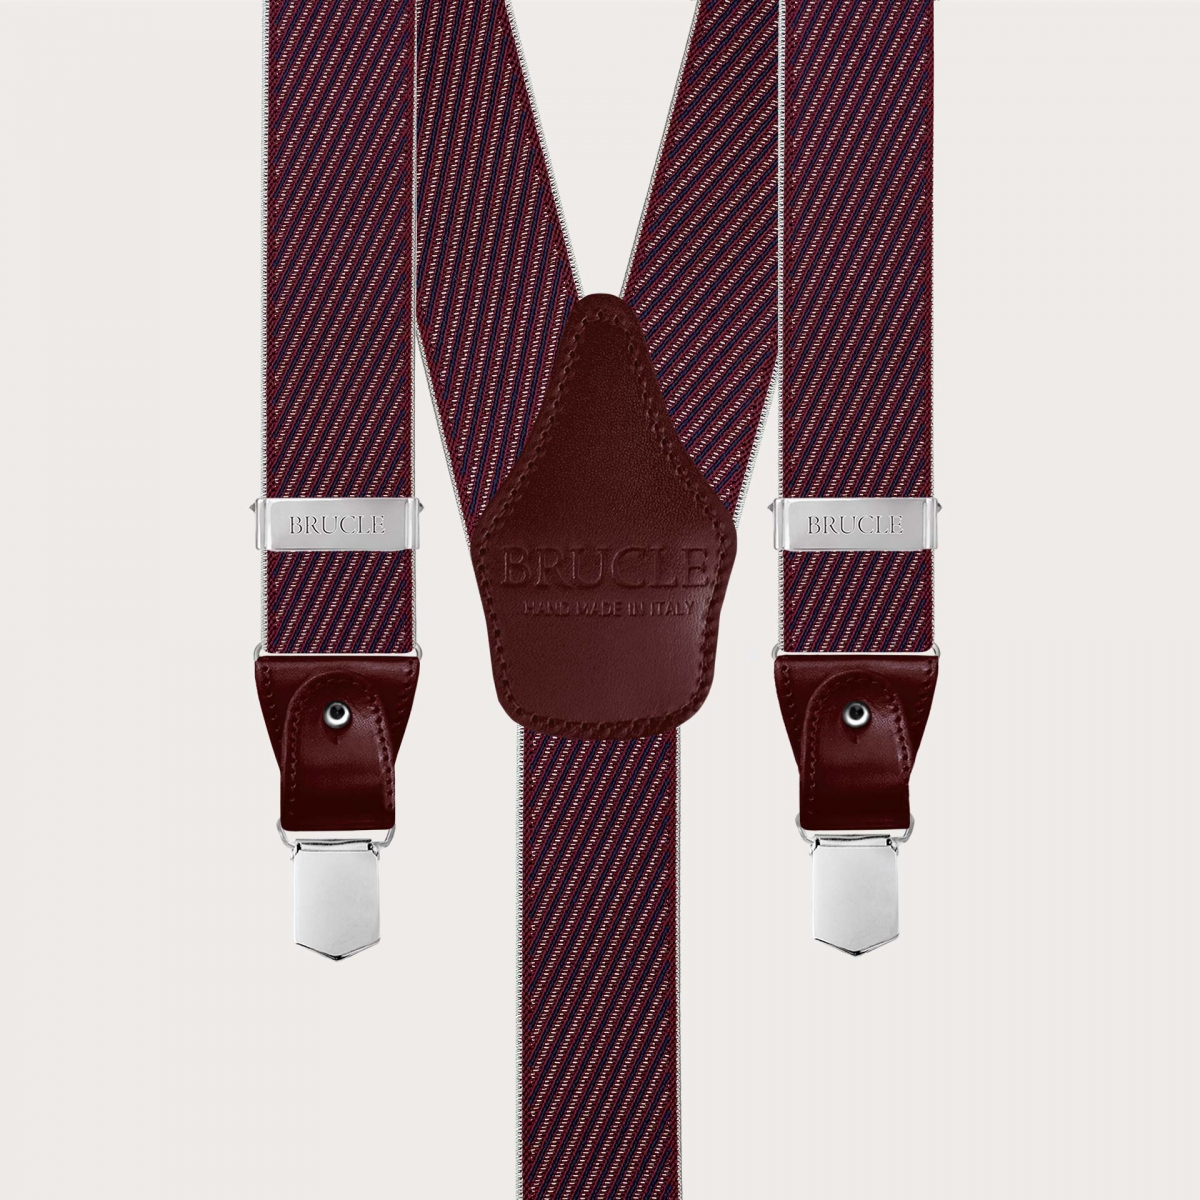 Elegante Herren-Bordeaux-Hosenträger mit schrägen Streifen für Knöpfe oder Clips